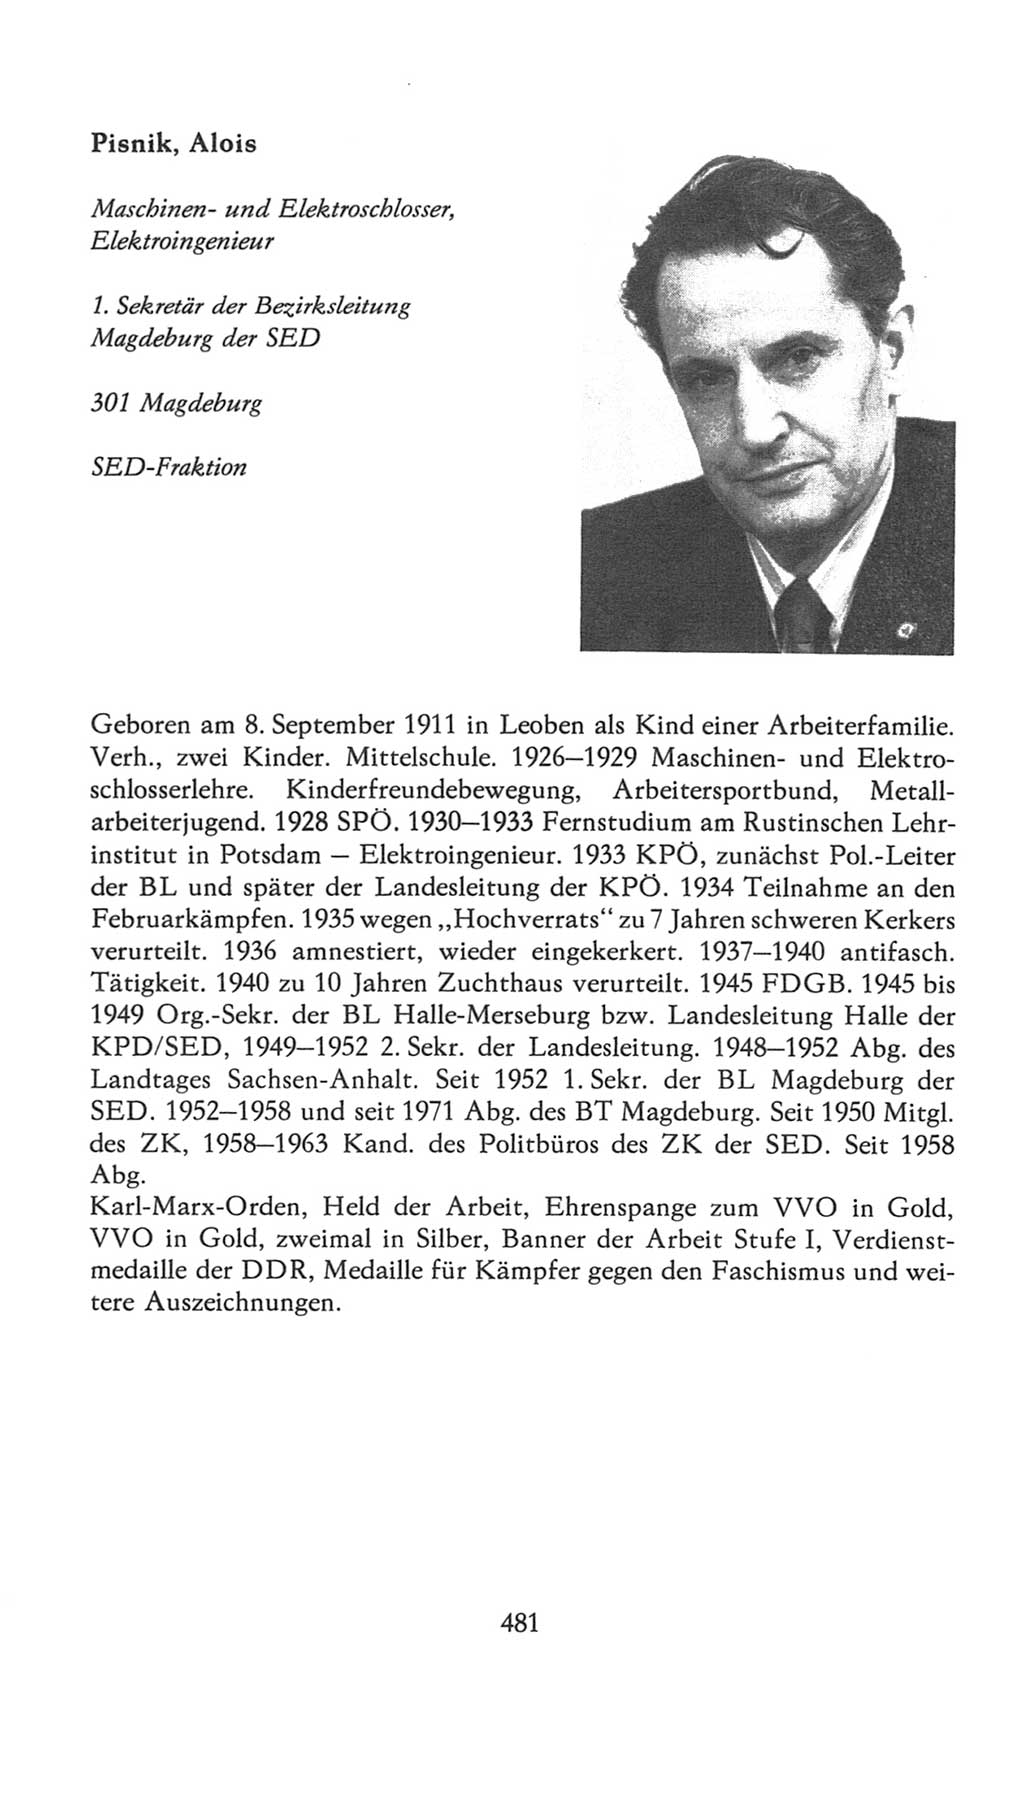 Volkskammer (VK) der Deutschen Demokratischen Republik (DDR), 7. Wahlperiode 1976-1981, Seite 481 (VK. DDR 7. WP. 1976-1981, S. 481)